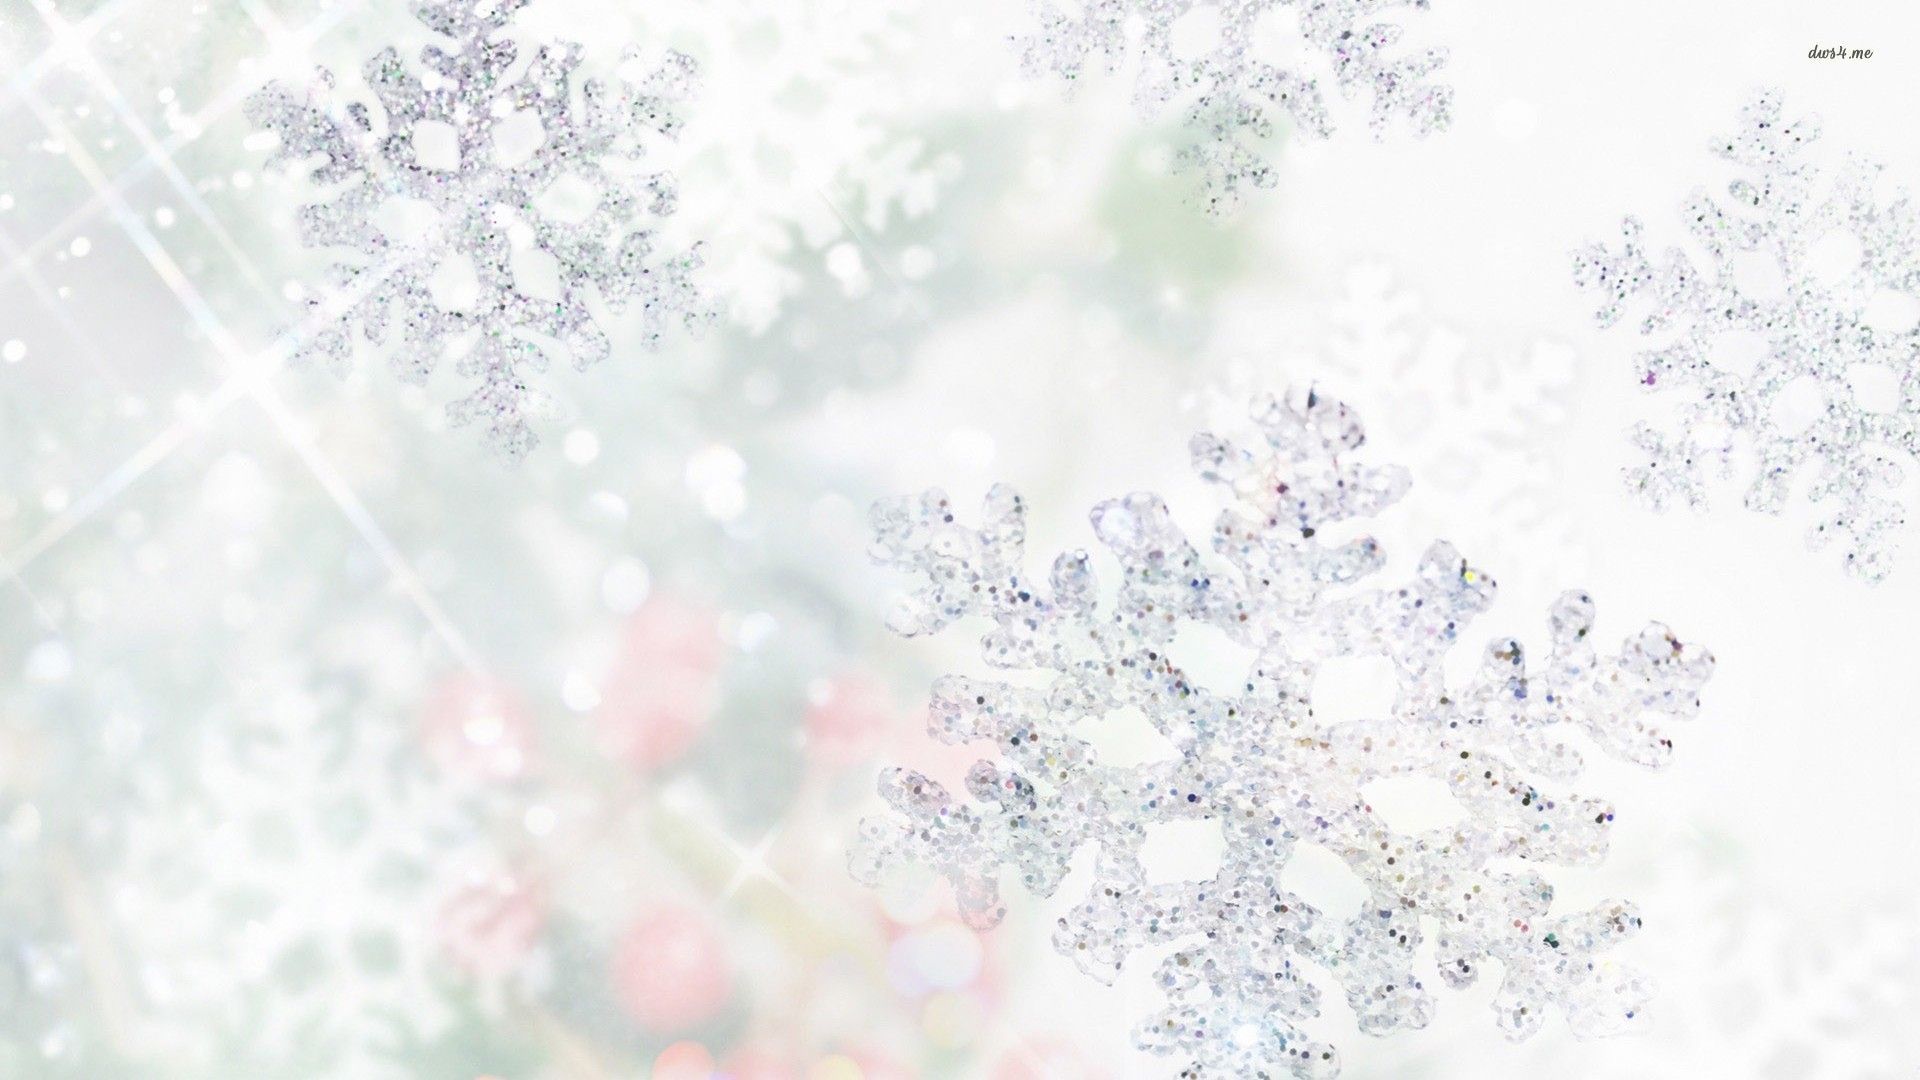 Snowflakes wallpaper - Digital Art wallpapers -